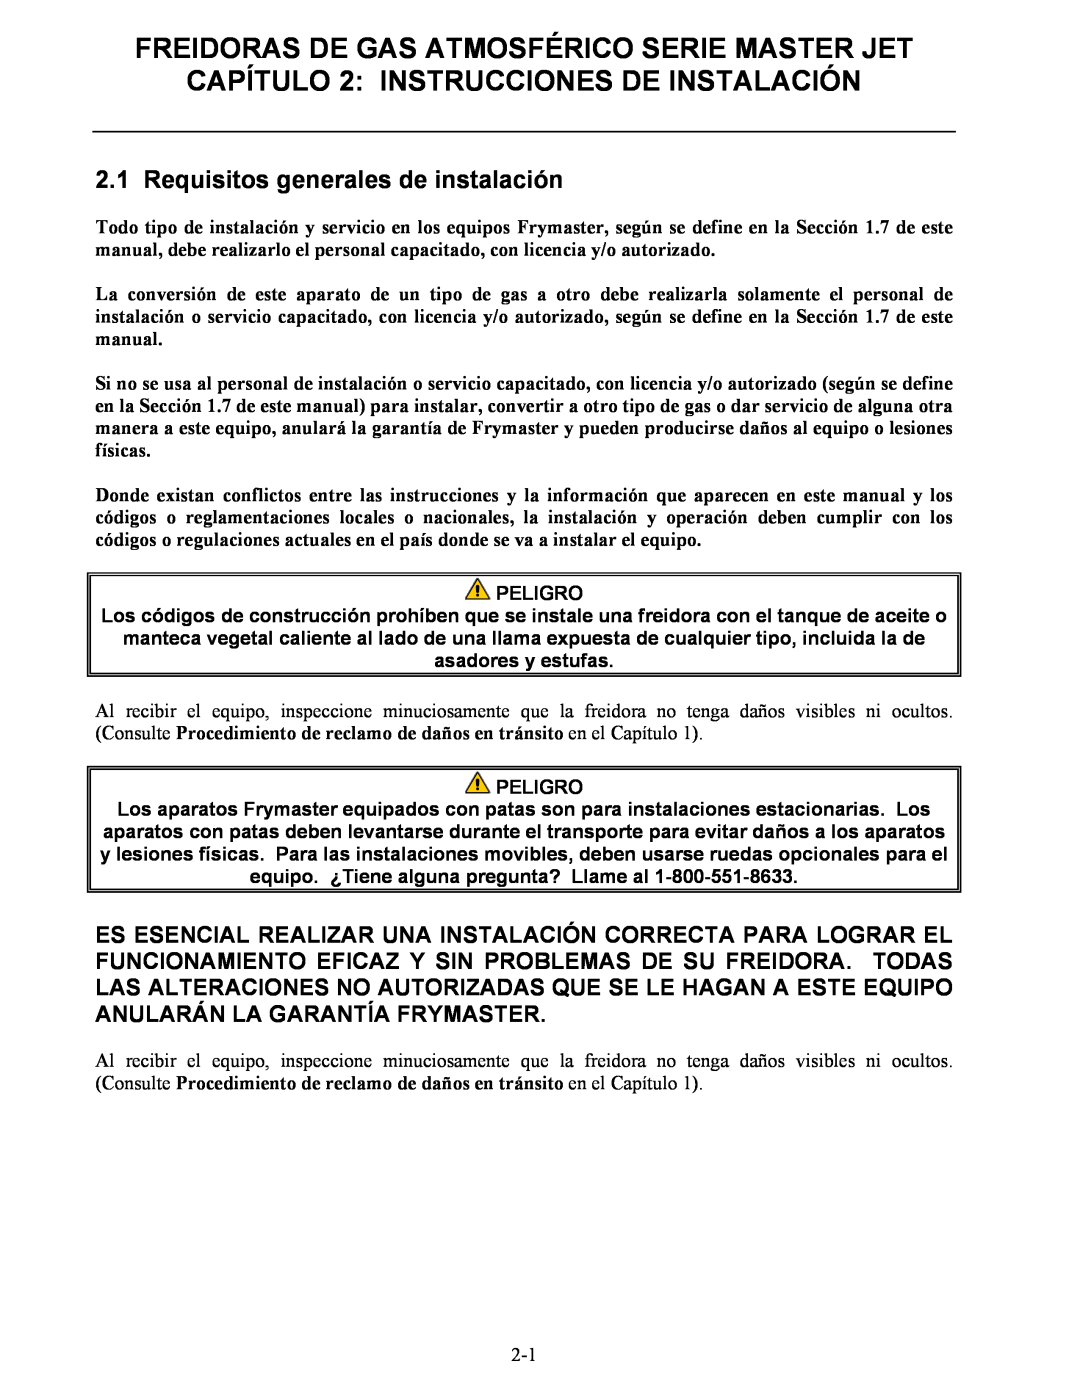 Frymaster 45 y manual CAPÍTULO 2: INSTRUCCIONES DE INSTALACIÓN, Freidoras De Gas Atmosférico Serie Master Jet, Peligro 